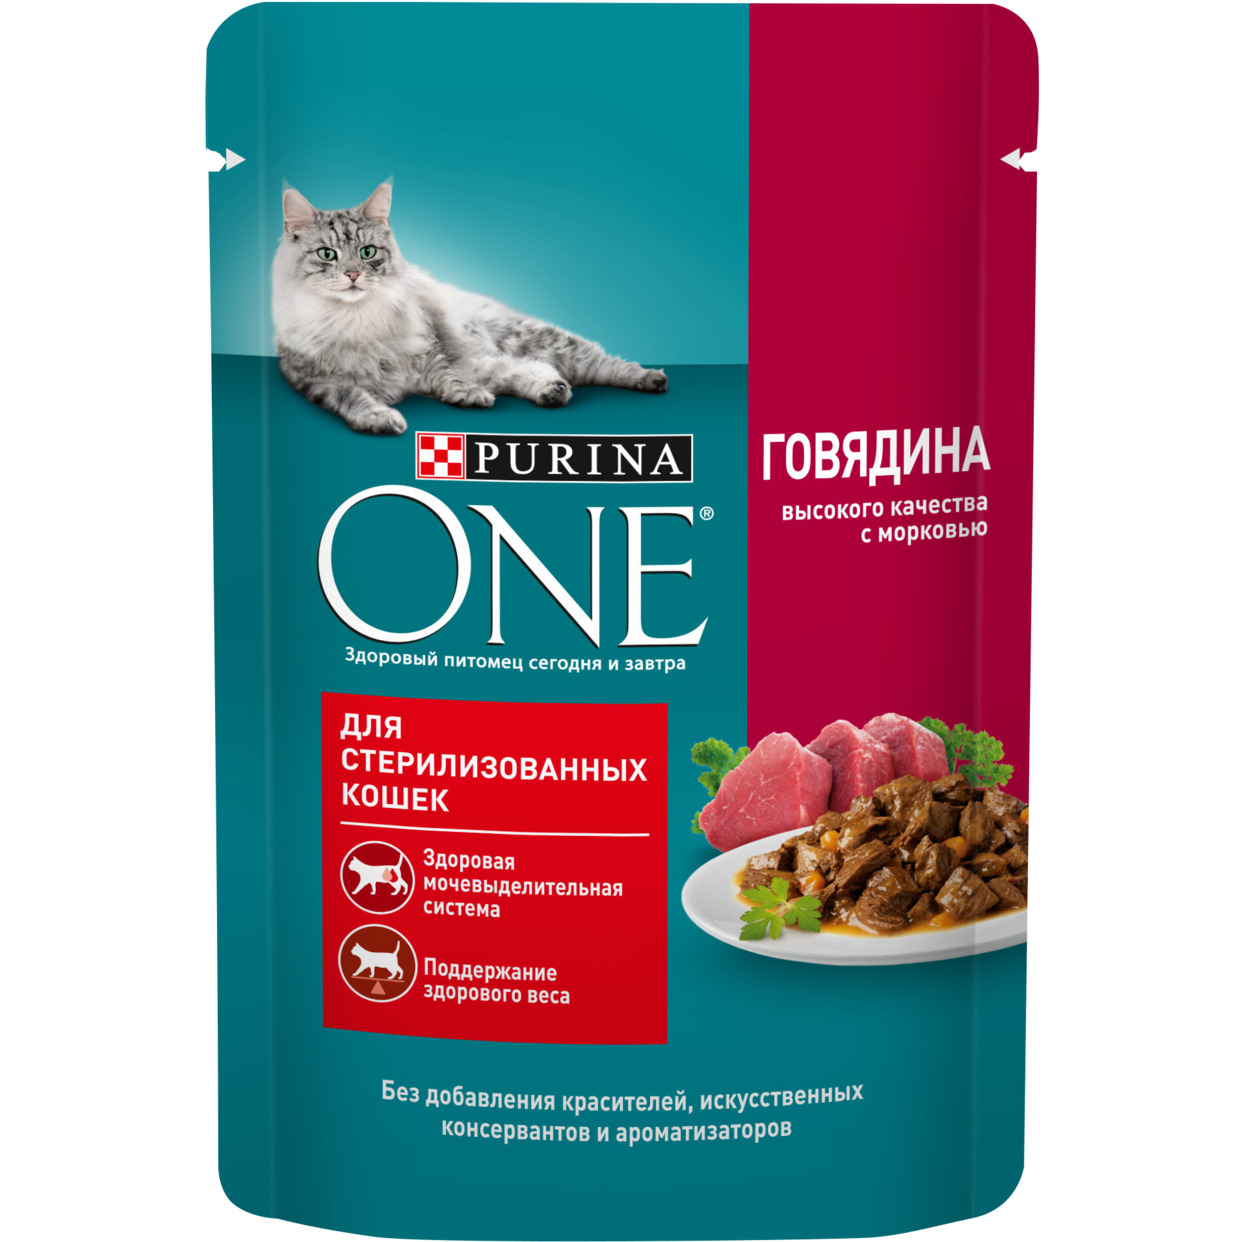 корм Purina ONE для стерилизованных кошек, с говядиной высокого качества и морковью, Пауч, 75 г по акции в Пятерочке